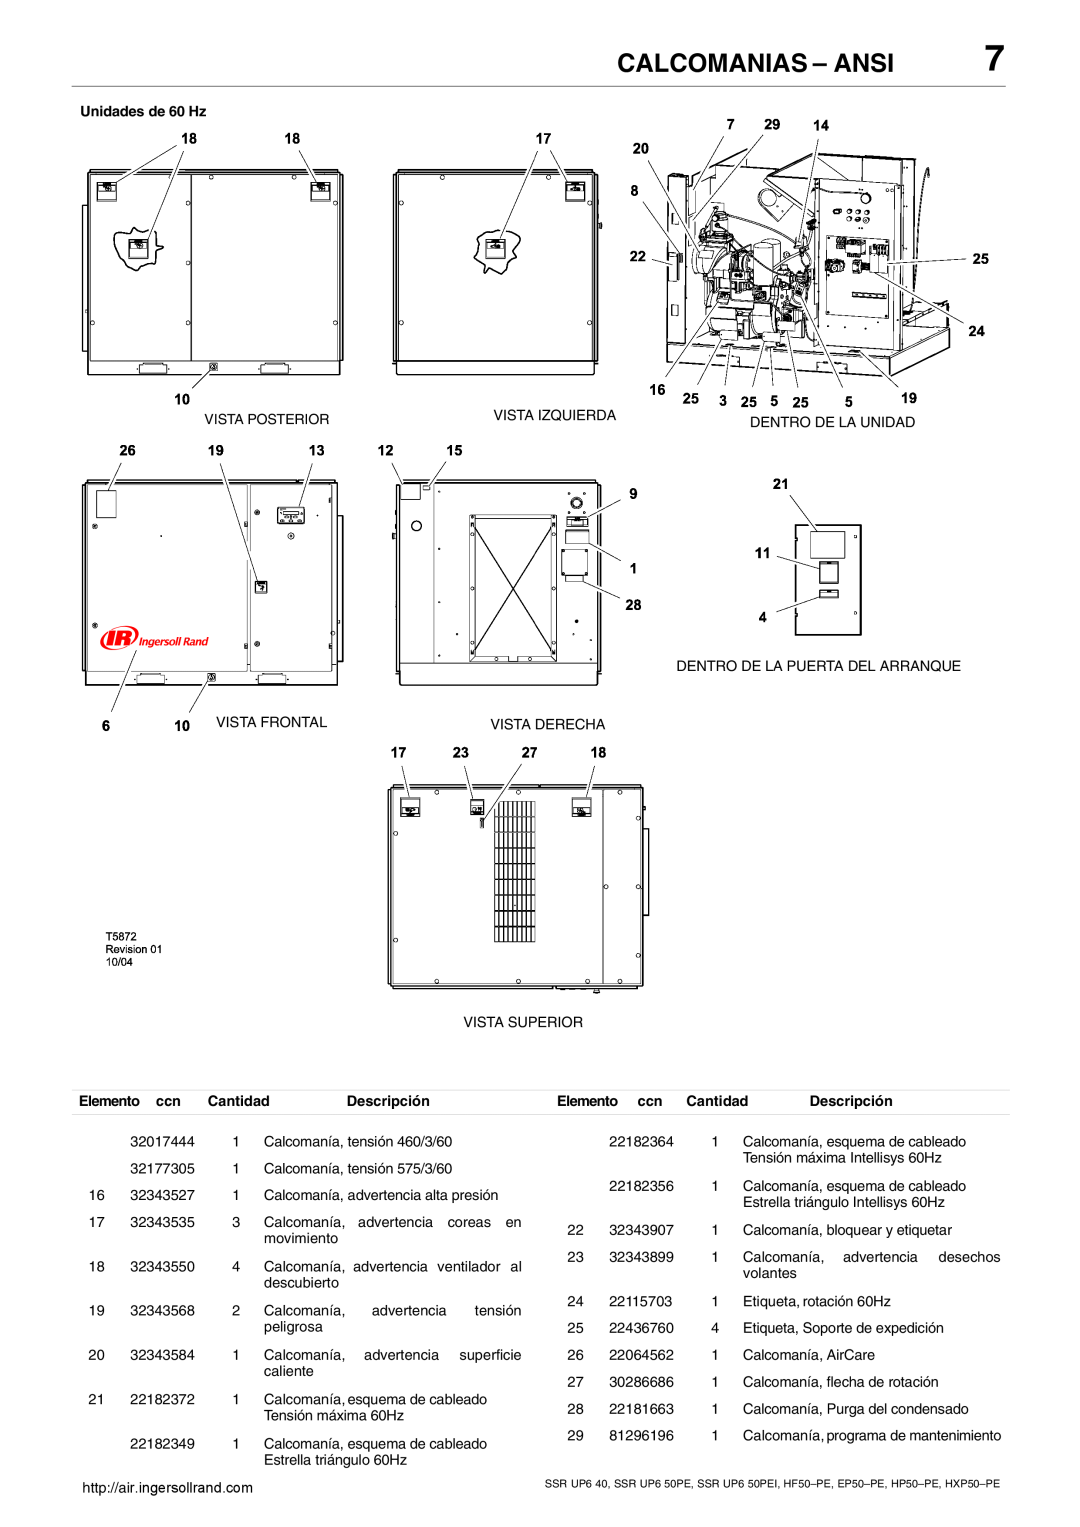 Ingersoll-Rand HP50-PE, SSR UP6 40 manual Calcomanias - Ansi, Unidades de 60 Hz, Descripción, Elemento ccn Cantidad 